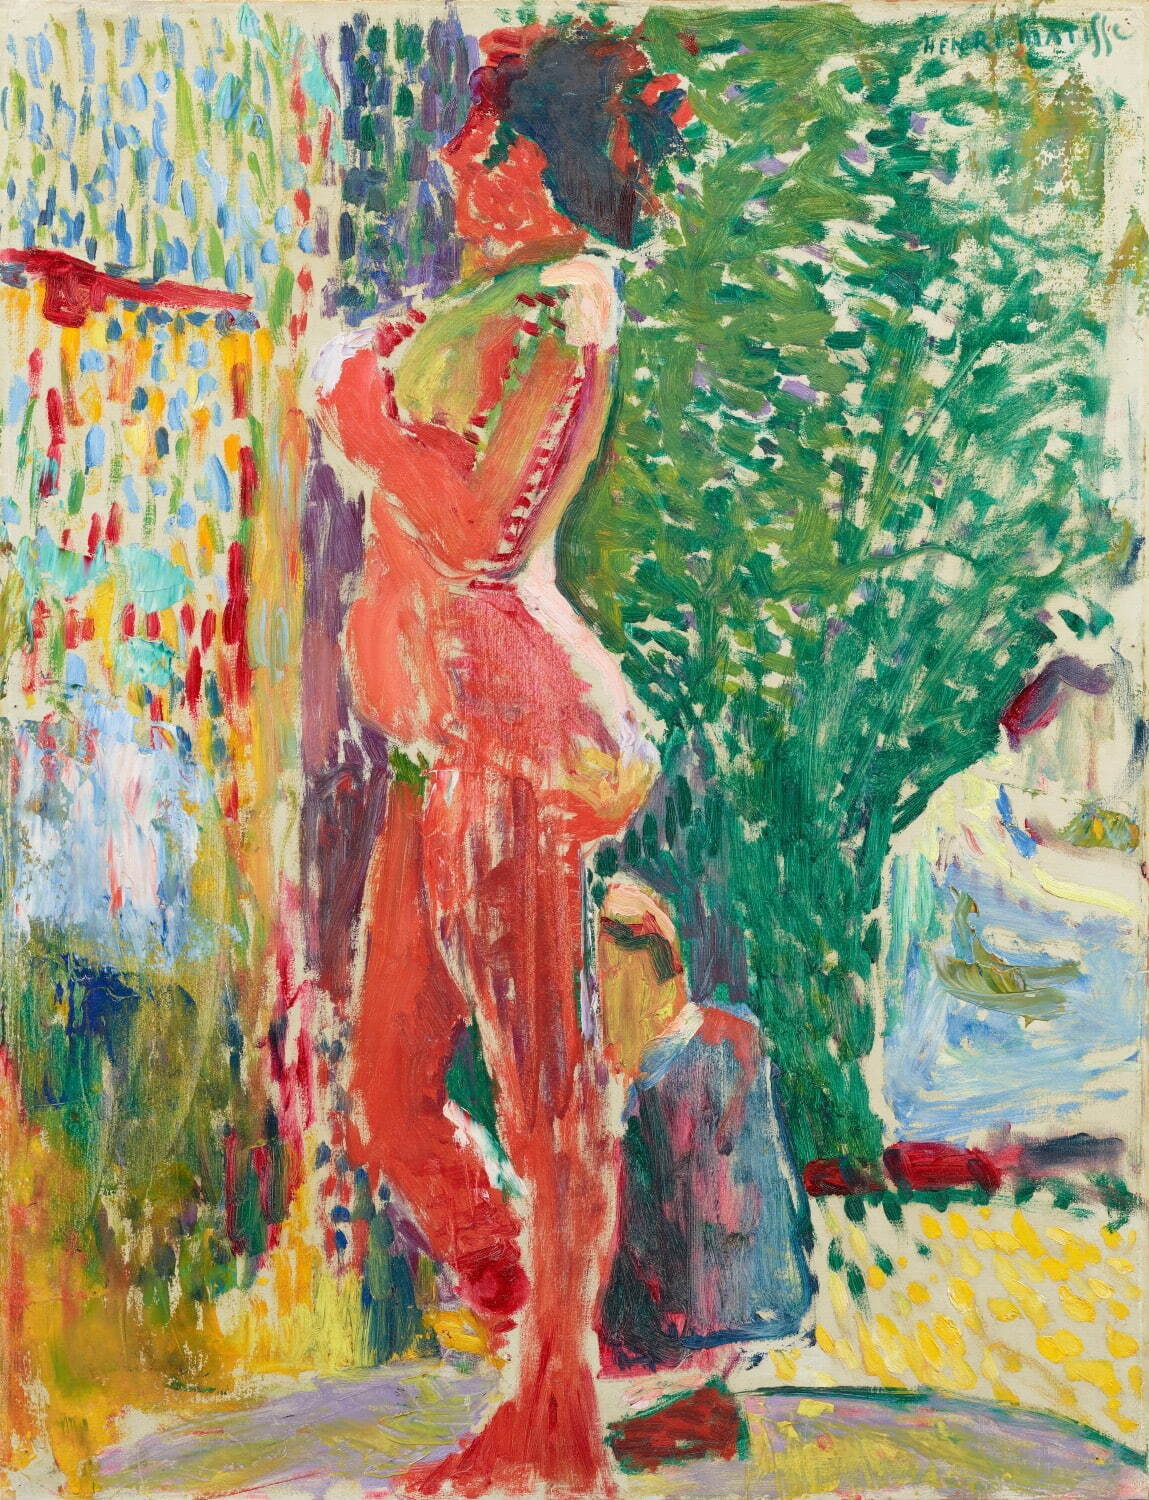 アンリ・マティス 《画室の裸婦》 1899年 石橋財団アーティゾン美術館